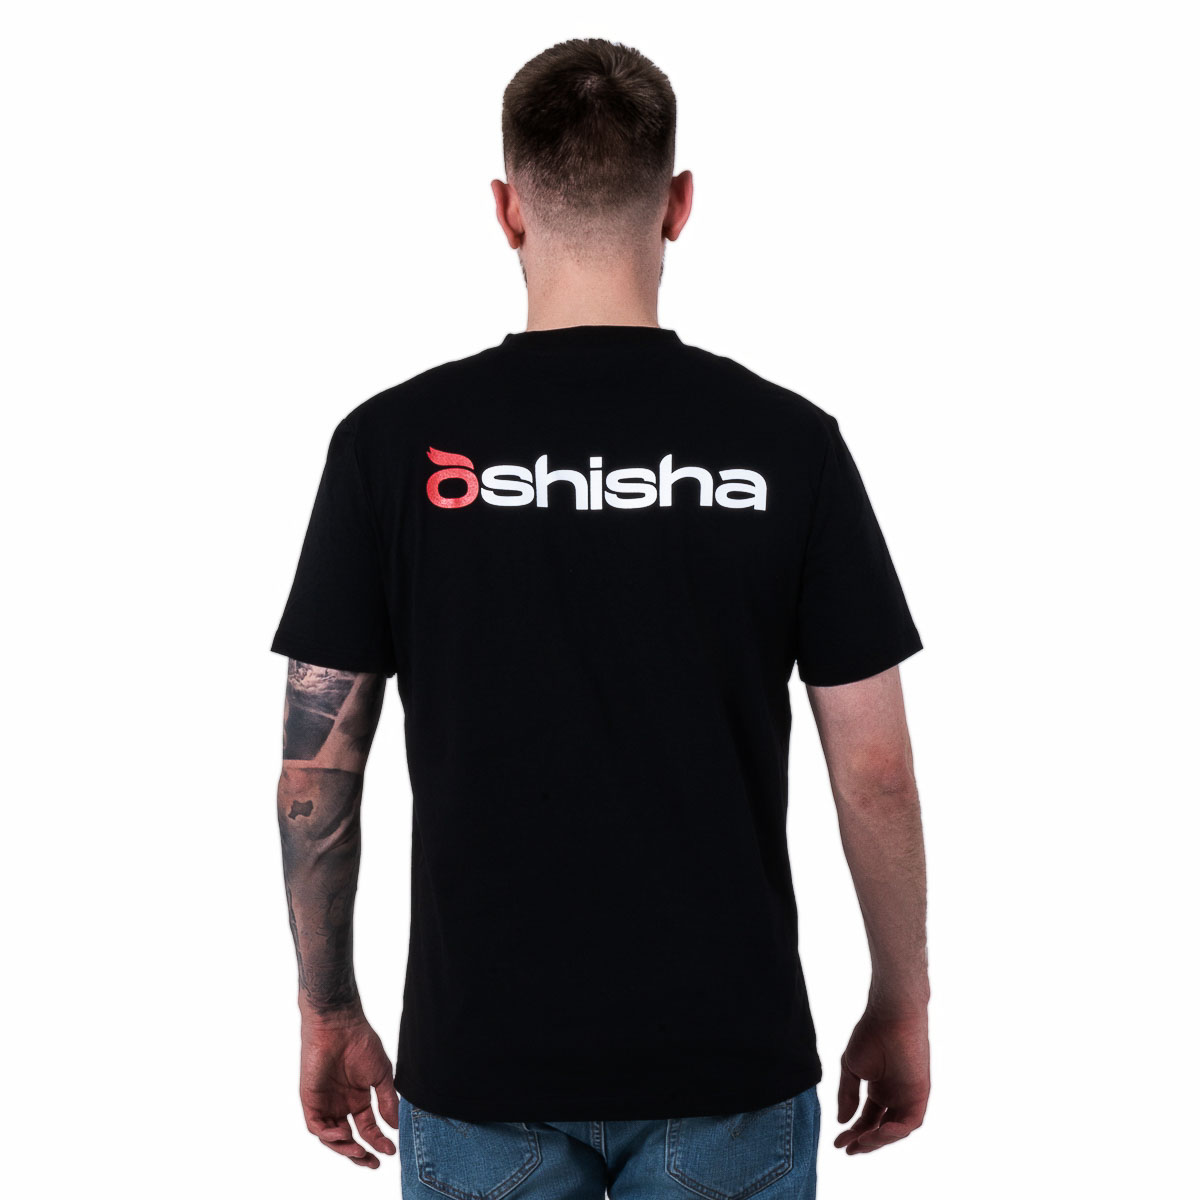 Фирменная футболка Oshisha L (чёрная)